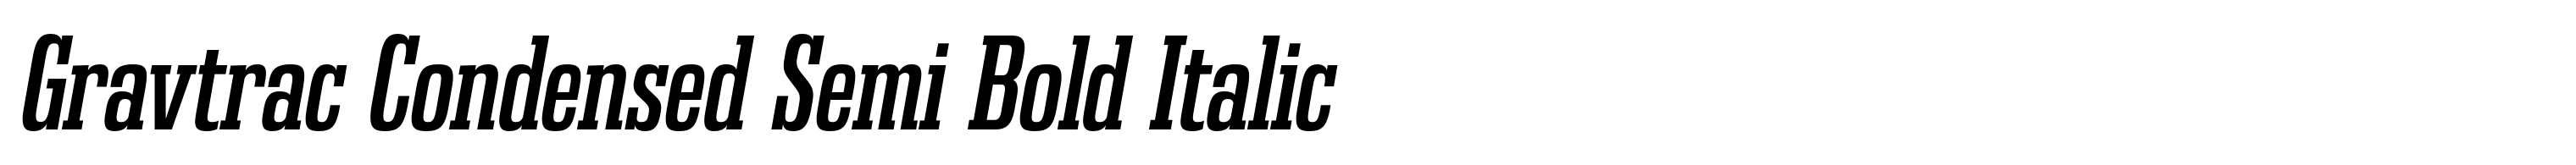 Gravtrac Condensed Semi Bold Italic